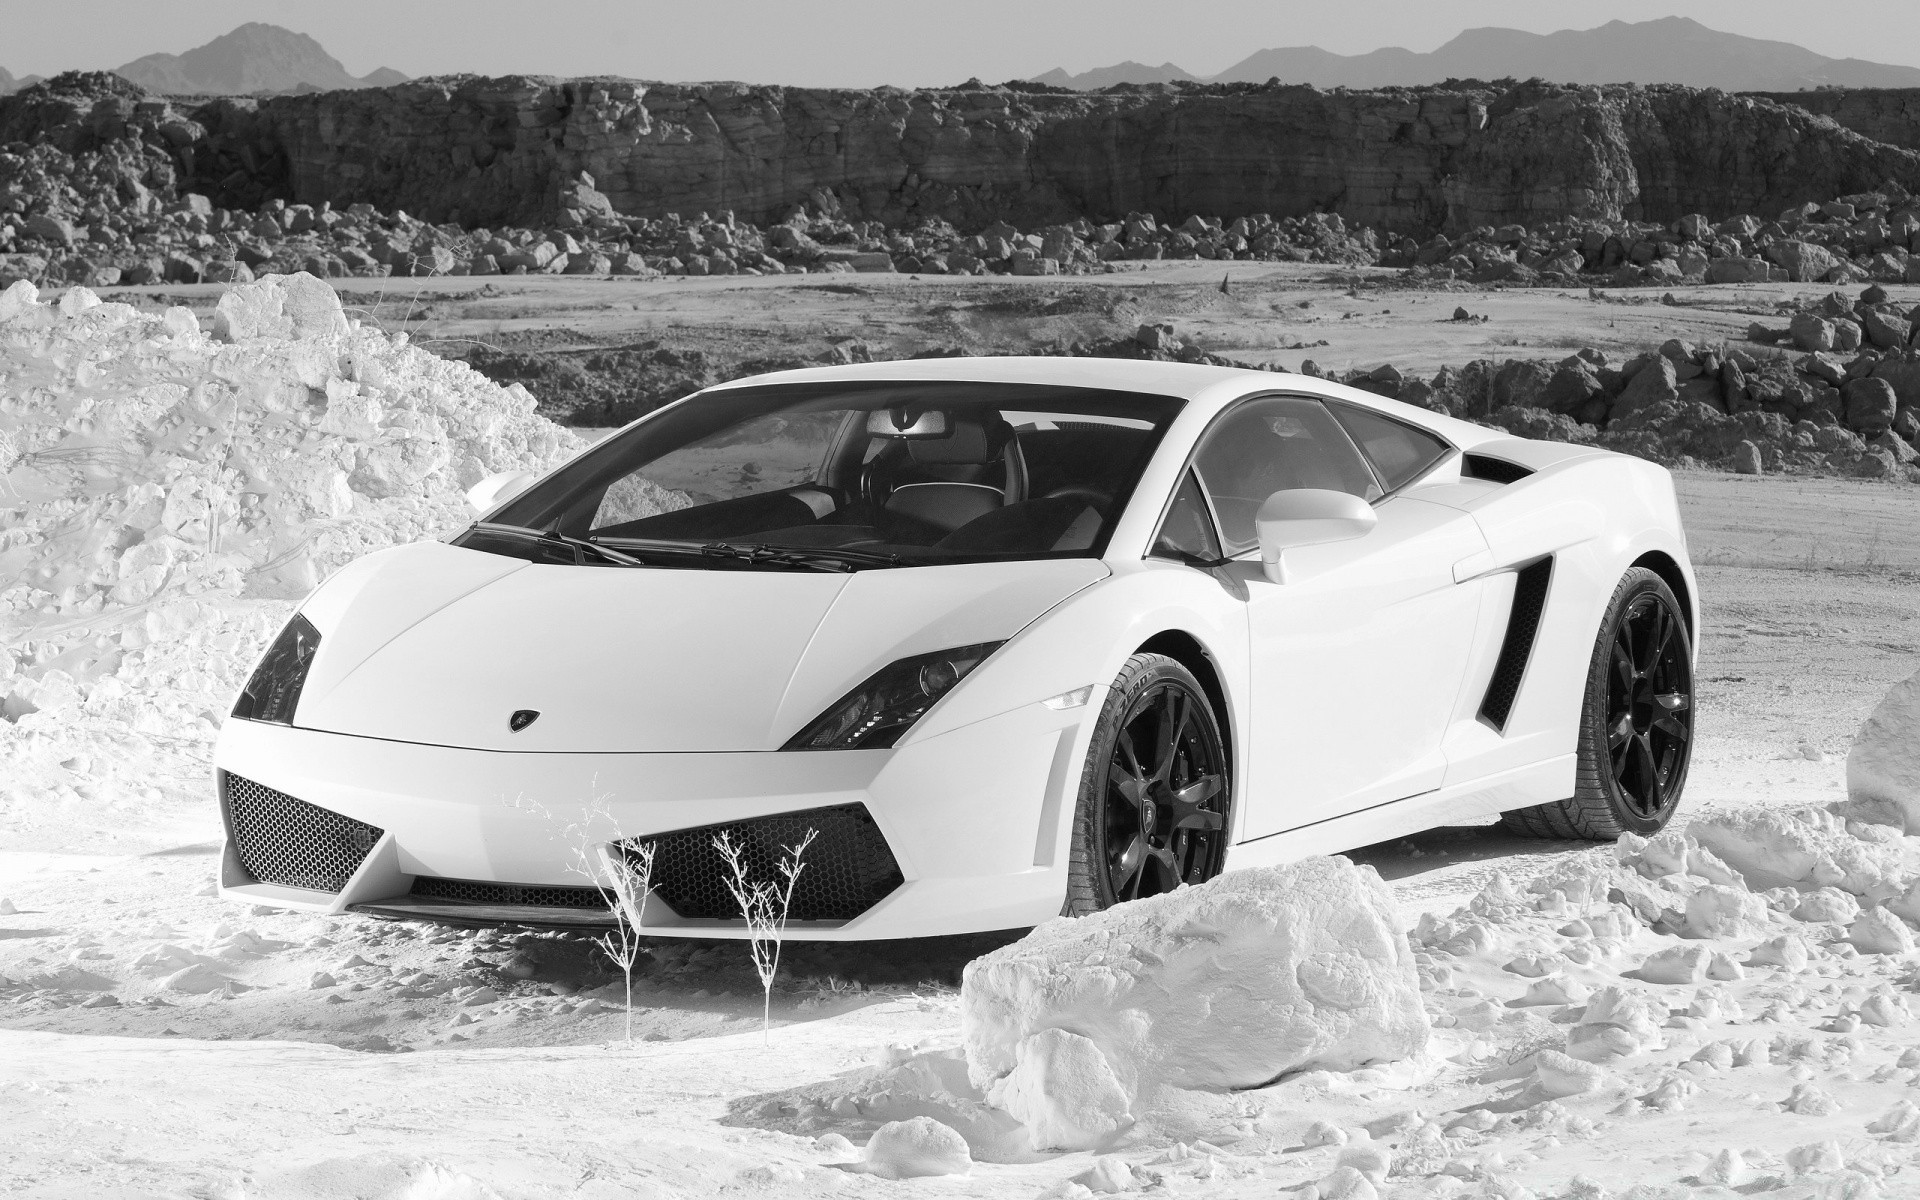 другая техника автомобиль автомобиль транспортная система спешите быстро действие зима гонки снег